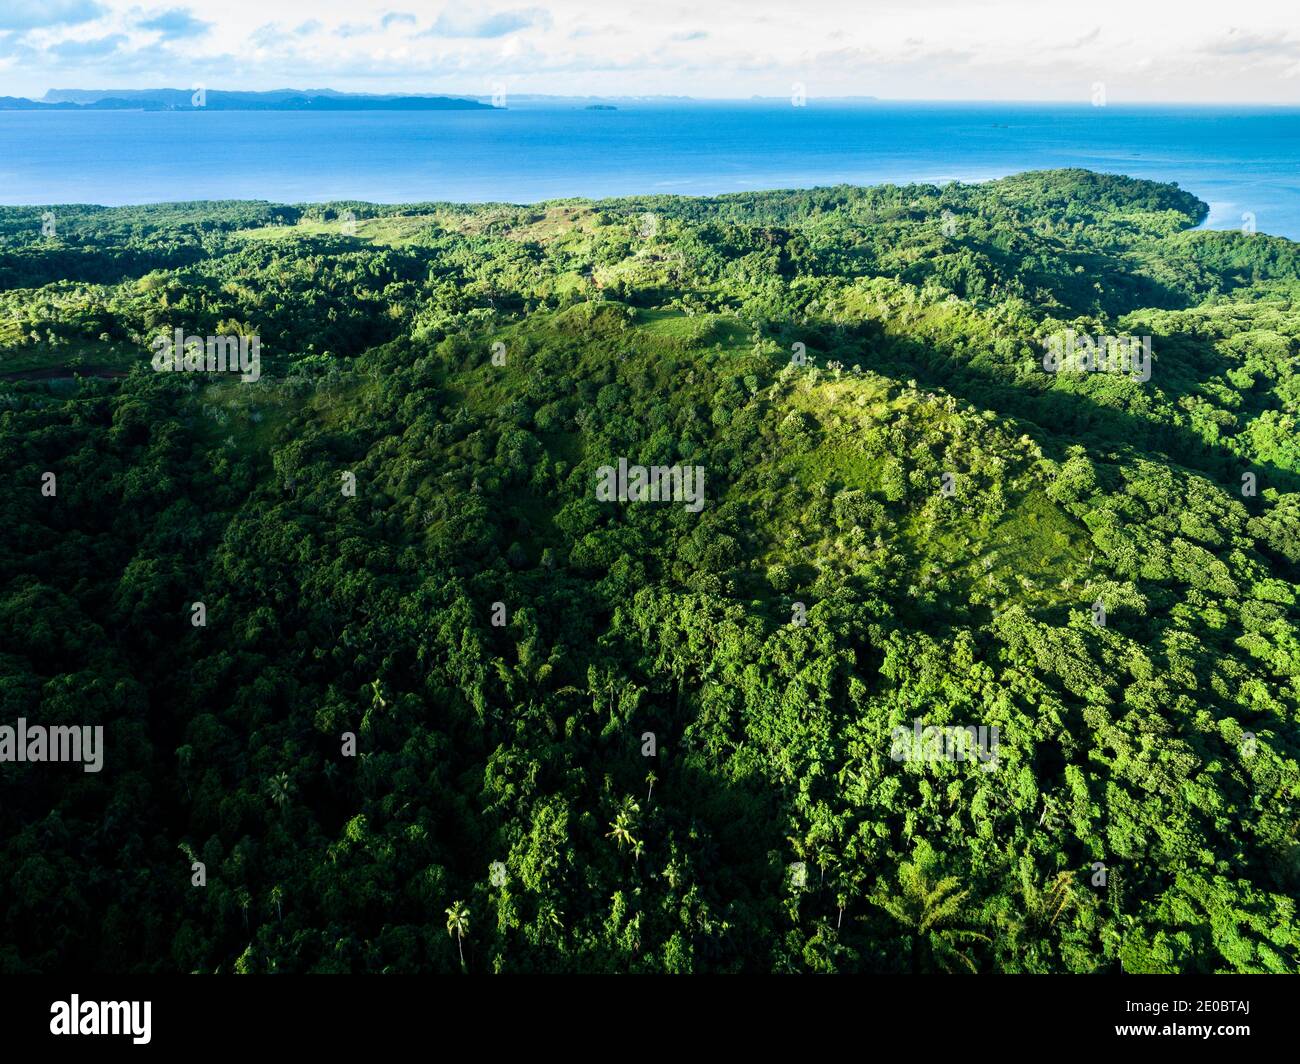 La selva tropical y el océano Pacífico, y la ruina local ked, también Terraza, es esculpida forma de tierra, Aimeliik, Isla de Babeldaob, Palau, Micronesia, Oceanía Foto de stock